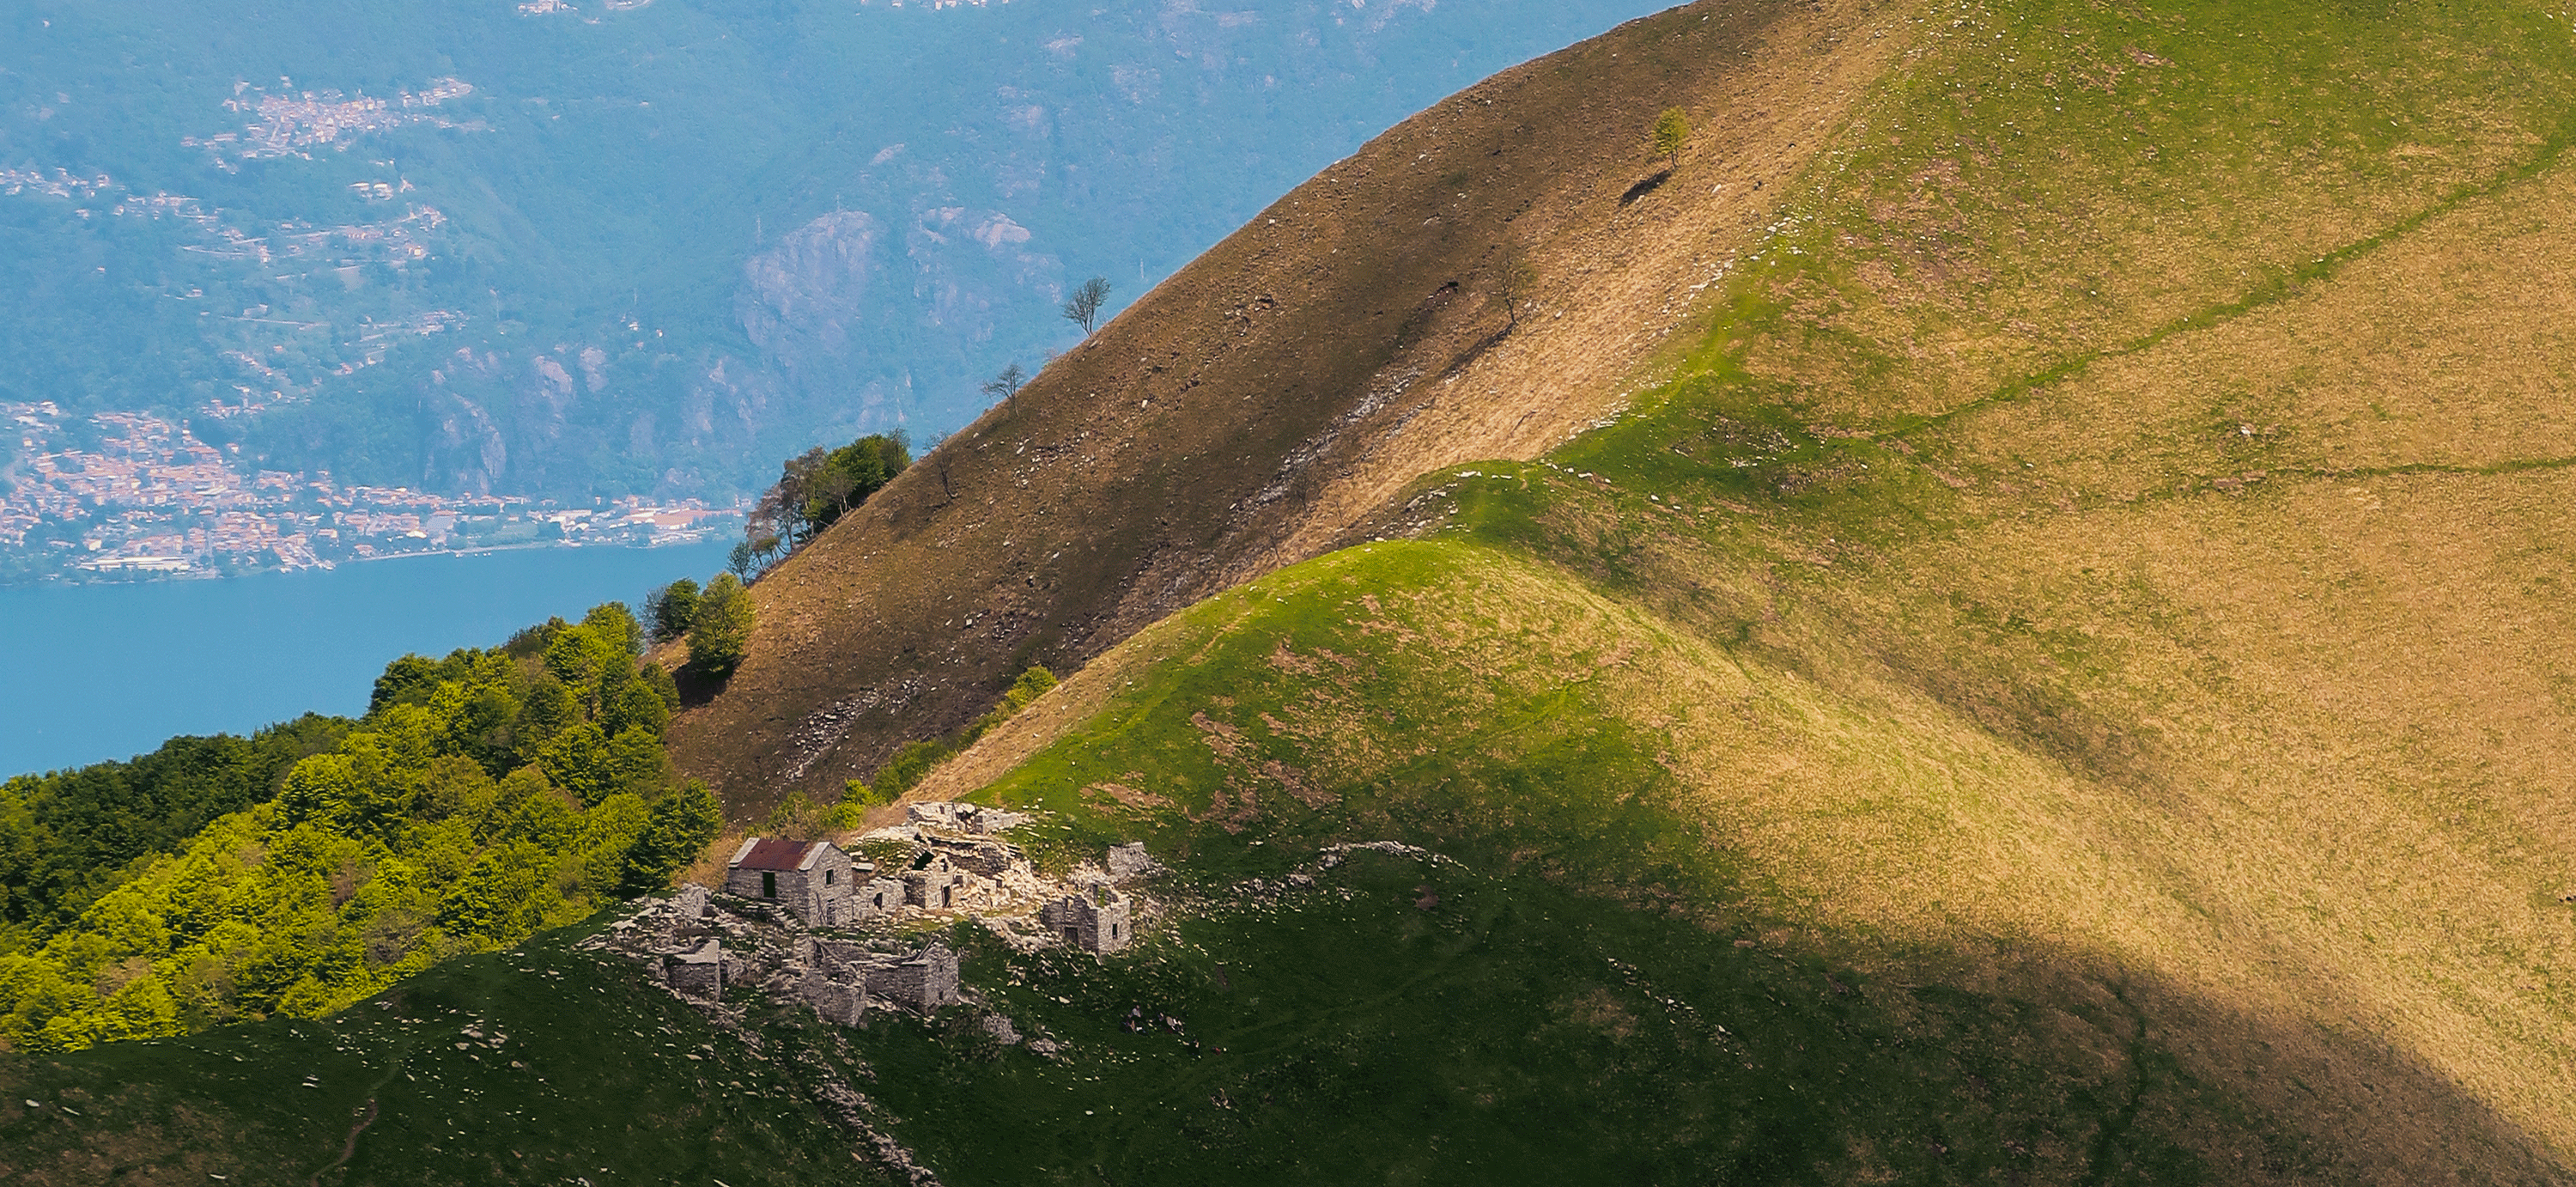 Monte di Lenno, Calbiga, Tremezzo e Crocione